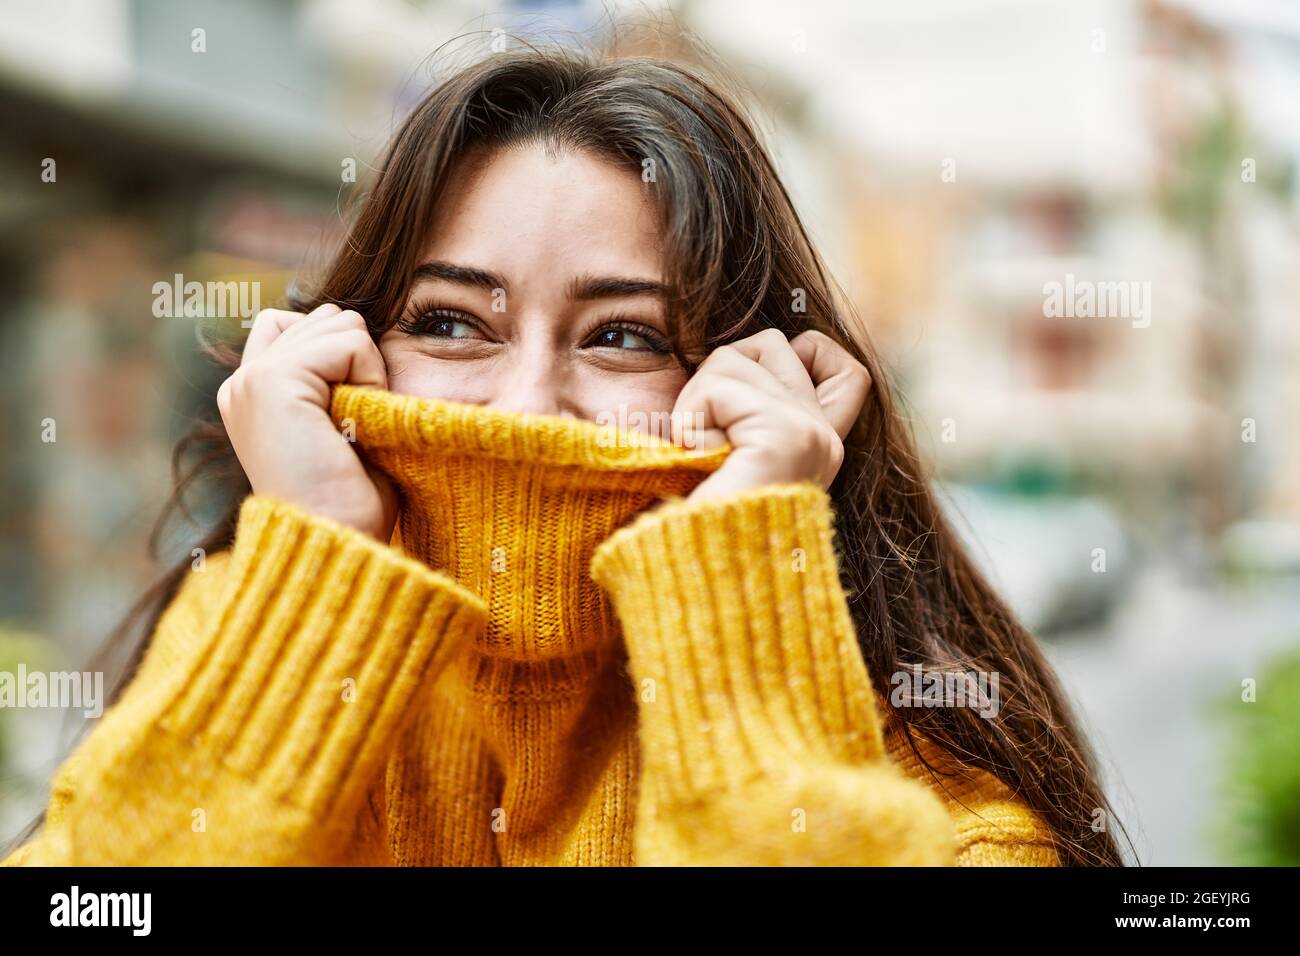 Junge schöne Brünette Frau trägt Rollkragenpullover dabei lustige Geste,  die Gesicht mit Pullover bedeckt Stockfotografie - Alamy